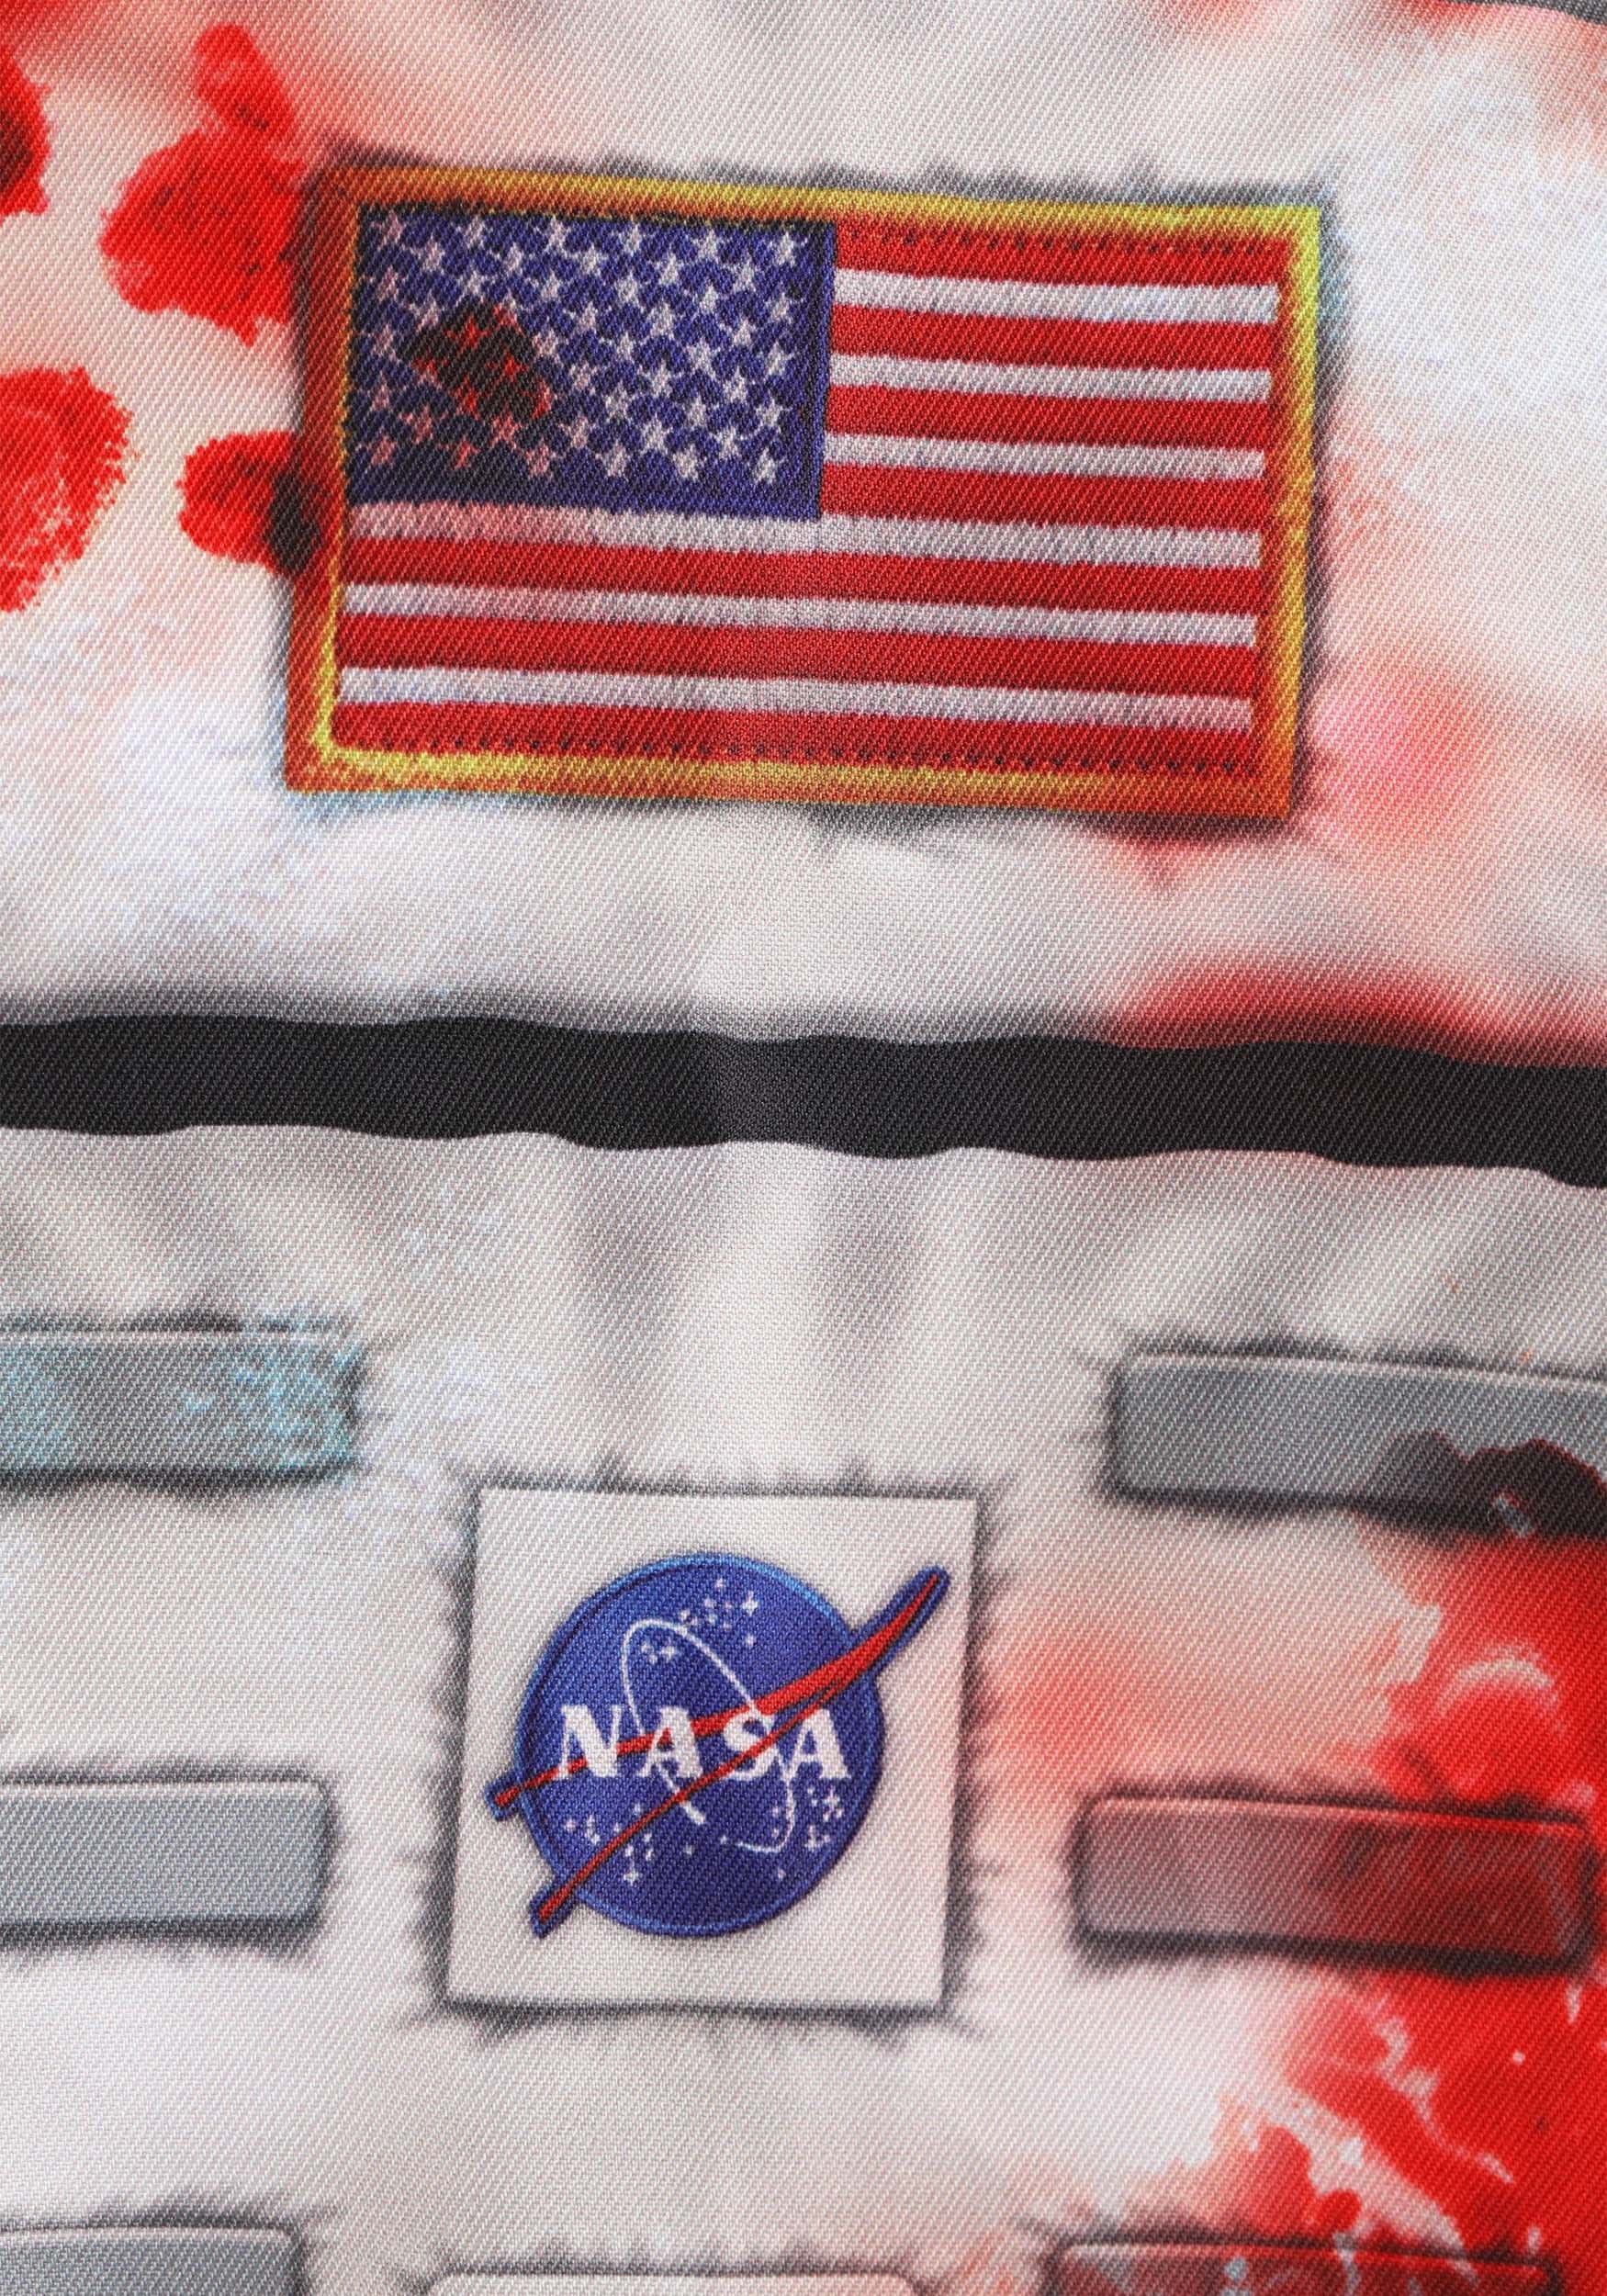 Astronaut Zombie Costume